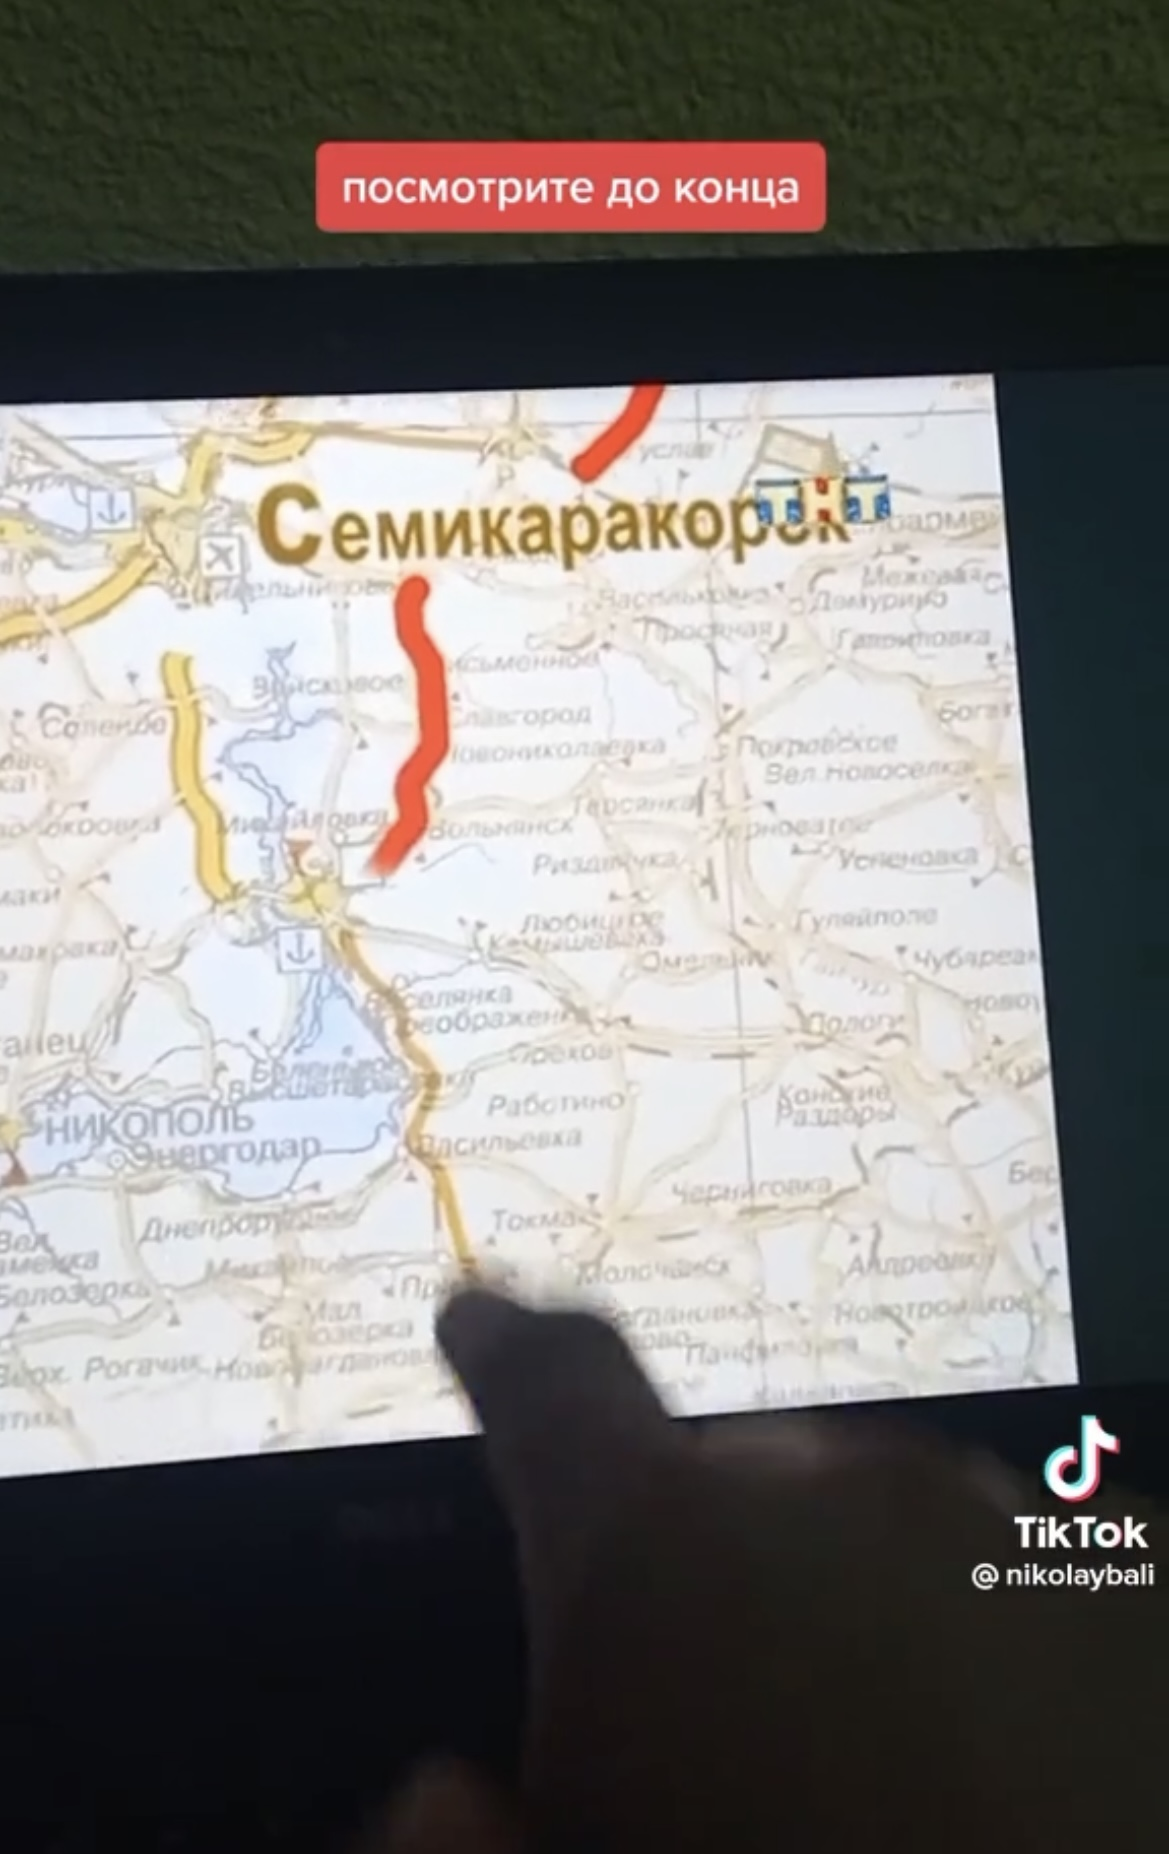 У серіалі ''Щасливі разом'' ще в 2006-му Росія ''привласнила'' собі українські території: Ізюм, Бердянськ та інші міста показали на мапі РФ. Відео